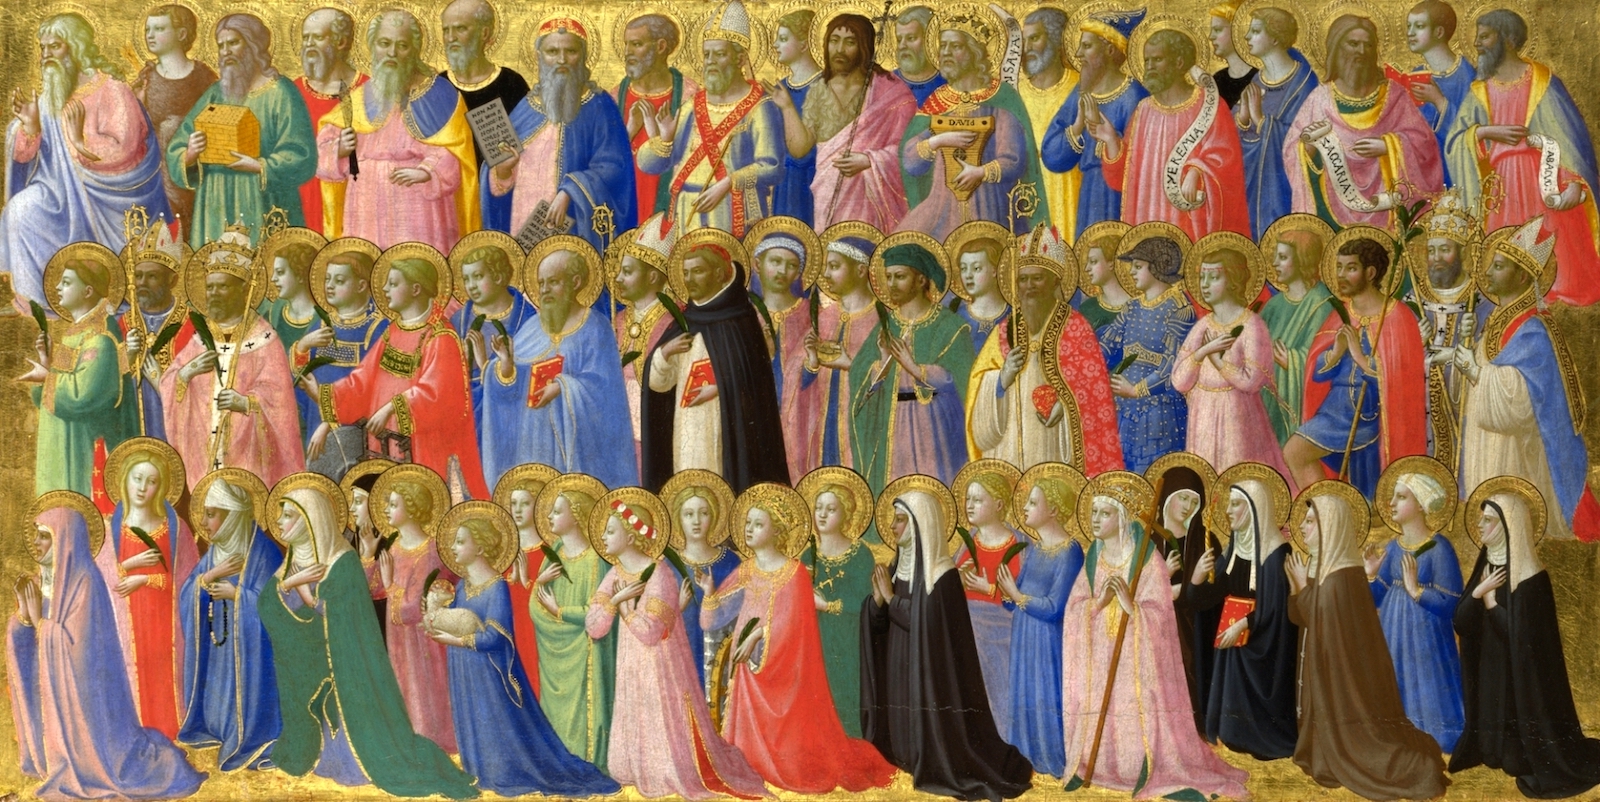 基督带着圣者及烈士们作为先驱 by 修士 安杰利科 - 大约 1423-4 - 31.9 x 63.5 厘米 